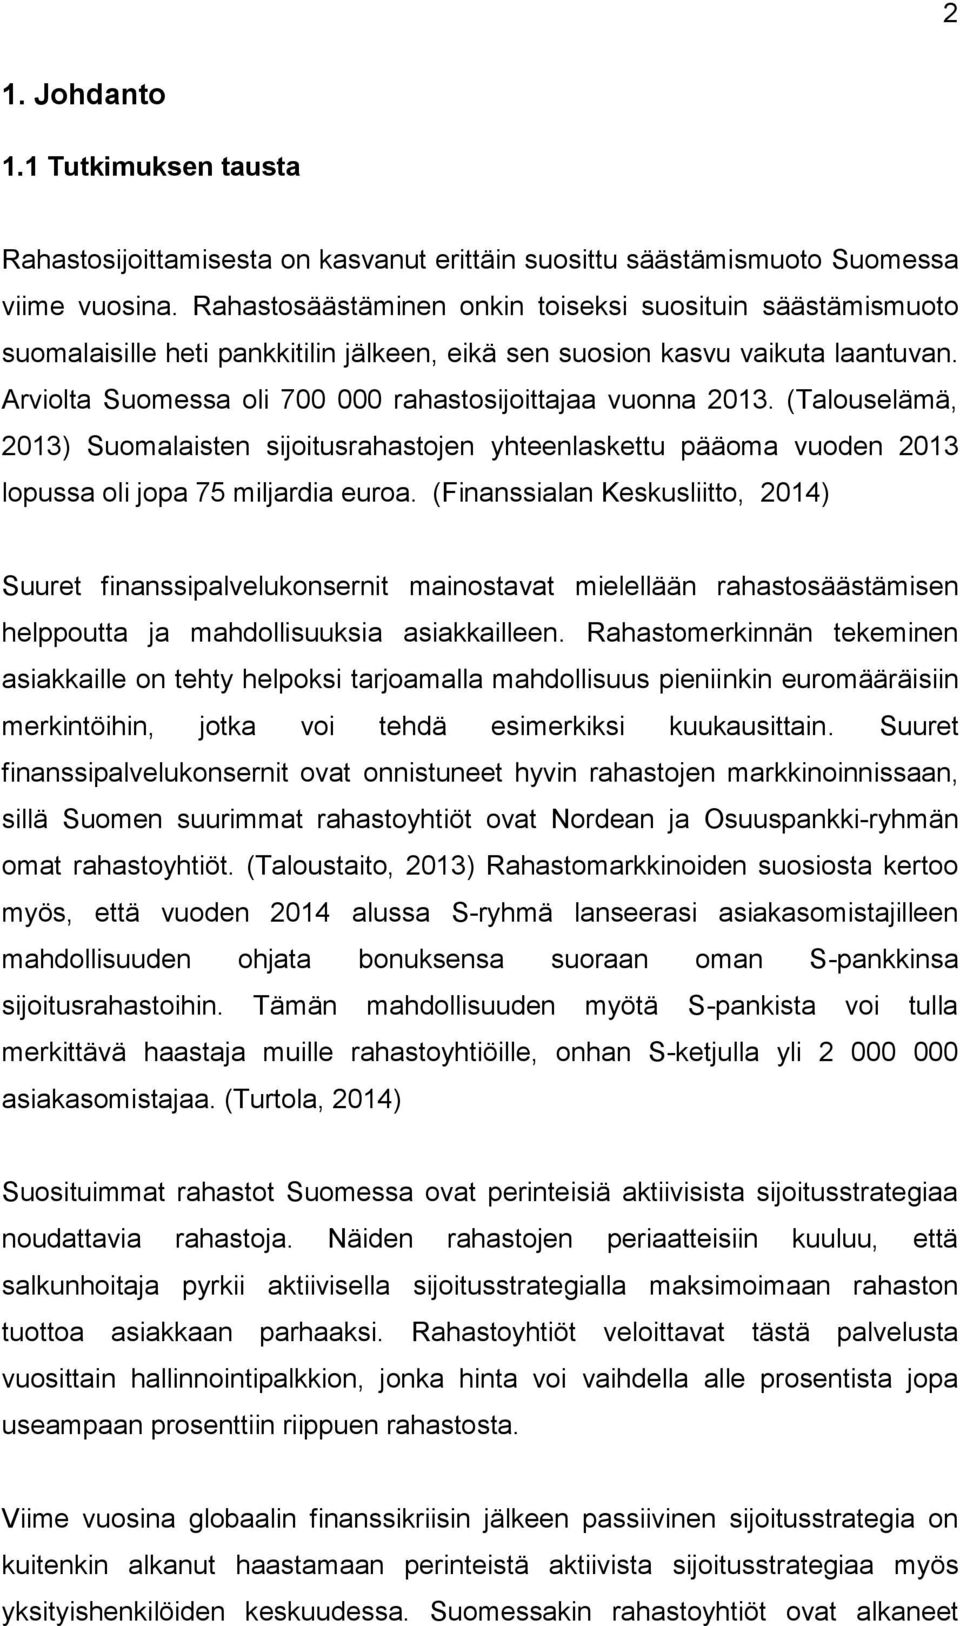 Arviolta Suomessa oli 700 000 rahastosijoittajaa vuonna 2013. (Talouselämä, 2013) Suomalaisten sijoitusrahastojen yhteenlaskettu pääoma vuoden 2013 lopussa oli jopa 75 miljardia euroa.